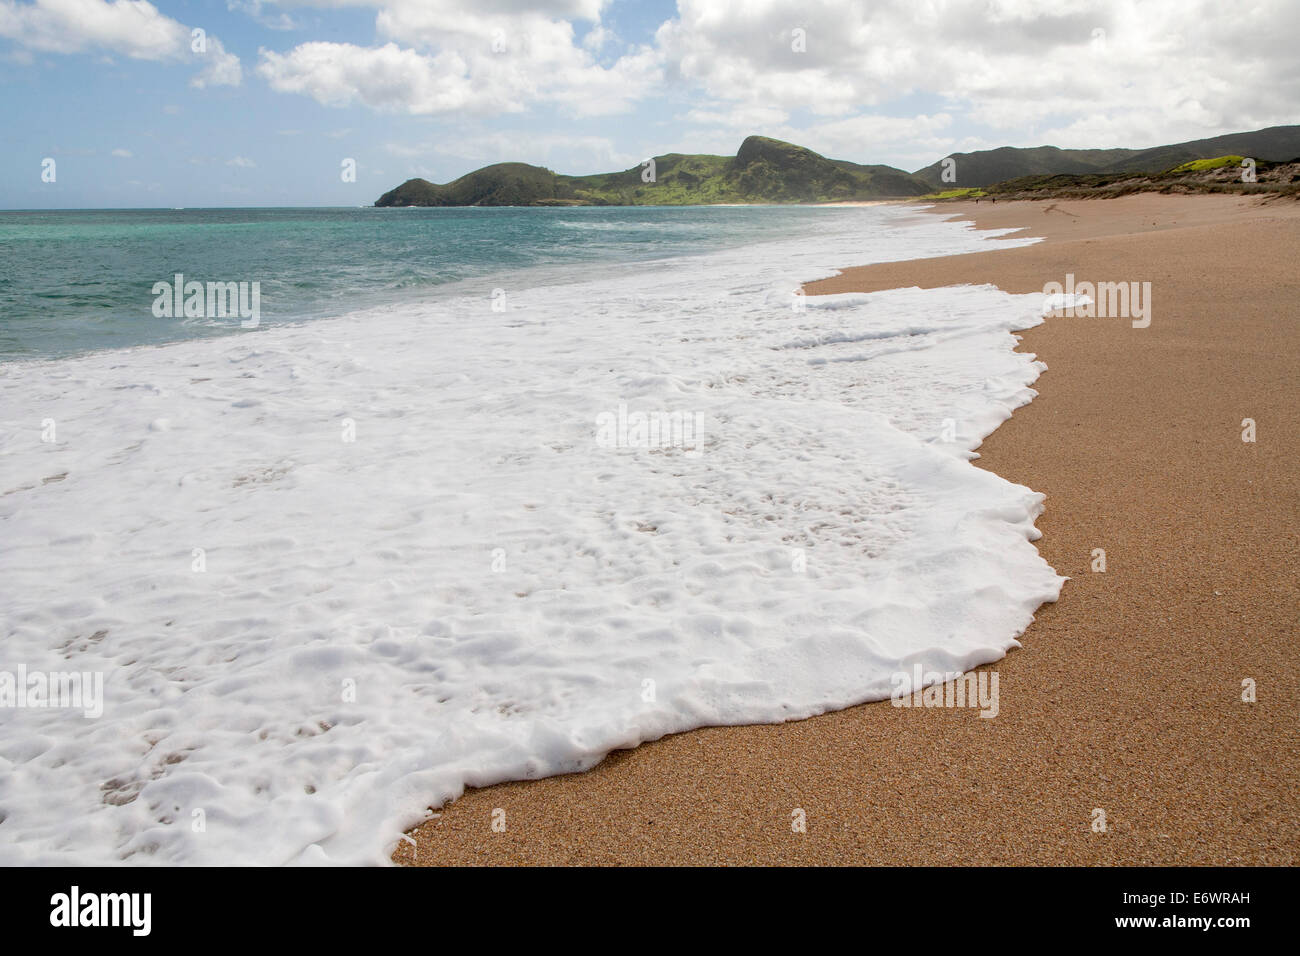 Plage déserte avec du sable doré, côte nord, île du Nord, Nouvelle-Zélande Banque D'Images